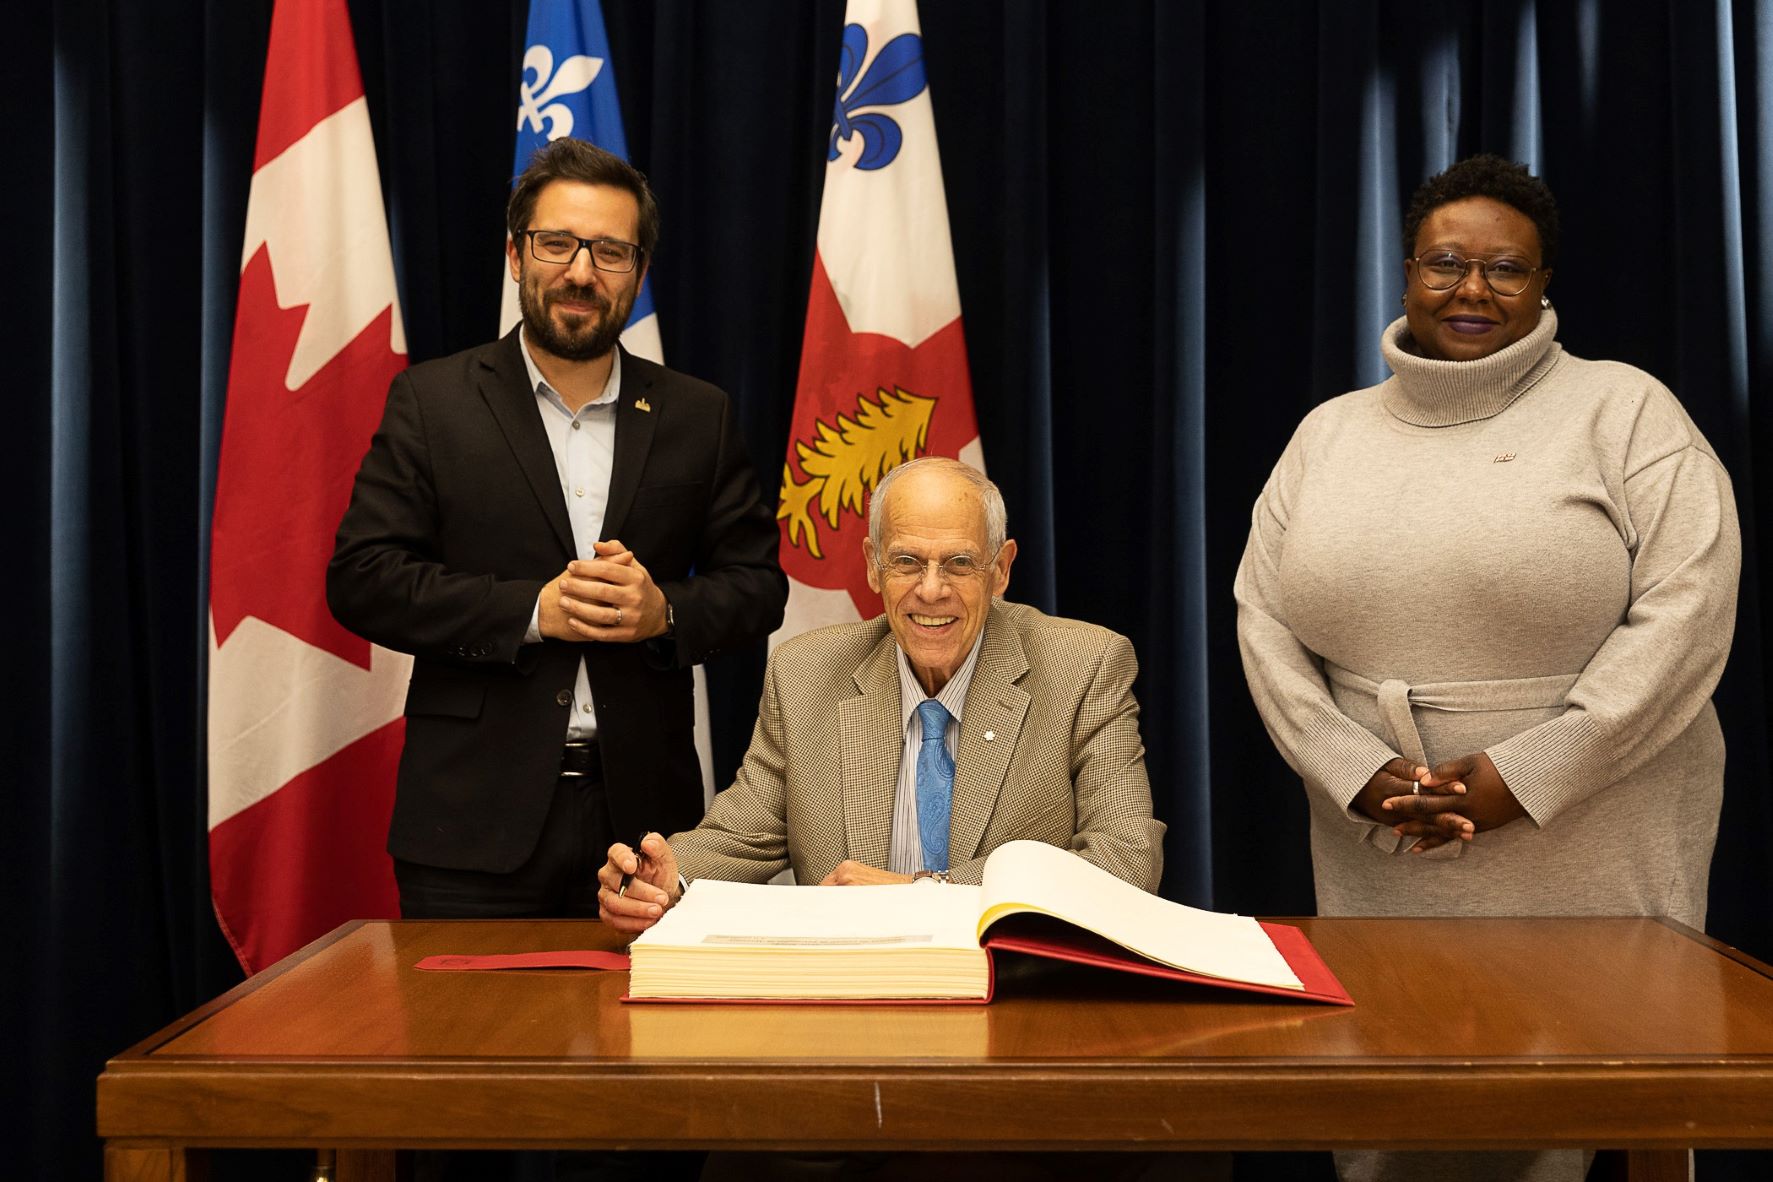 M. Peter Jacobs signant le livre d'or de la Ville accompagné de M. Robert Beaudry et de Mme Ericka Alneus (photo : Ville de Montréal / Bianca Diorio)